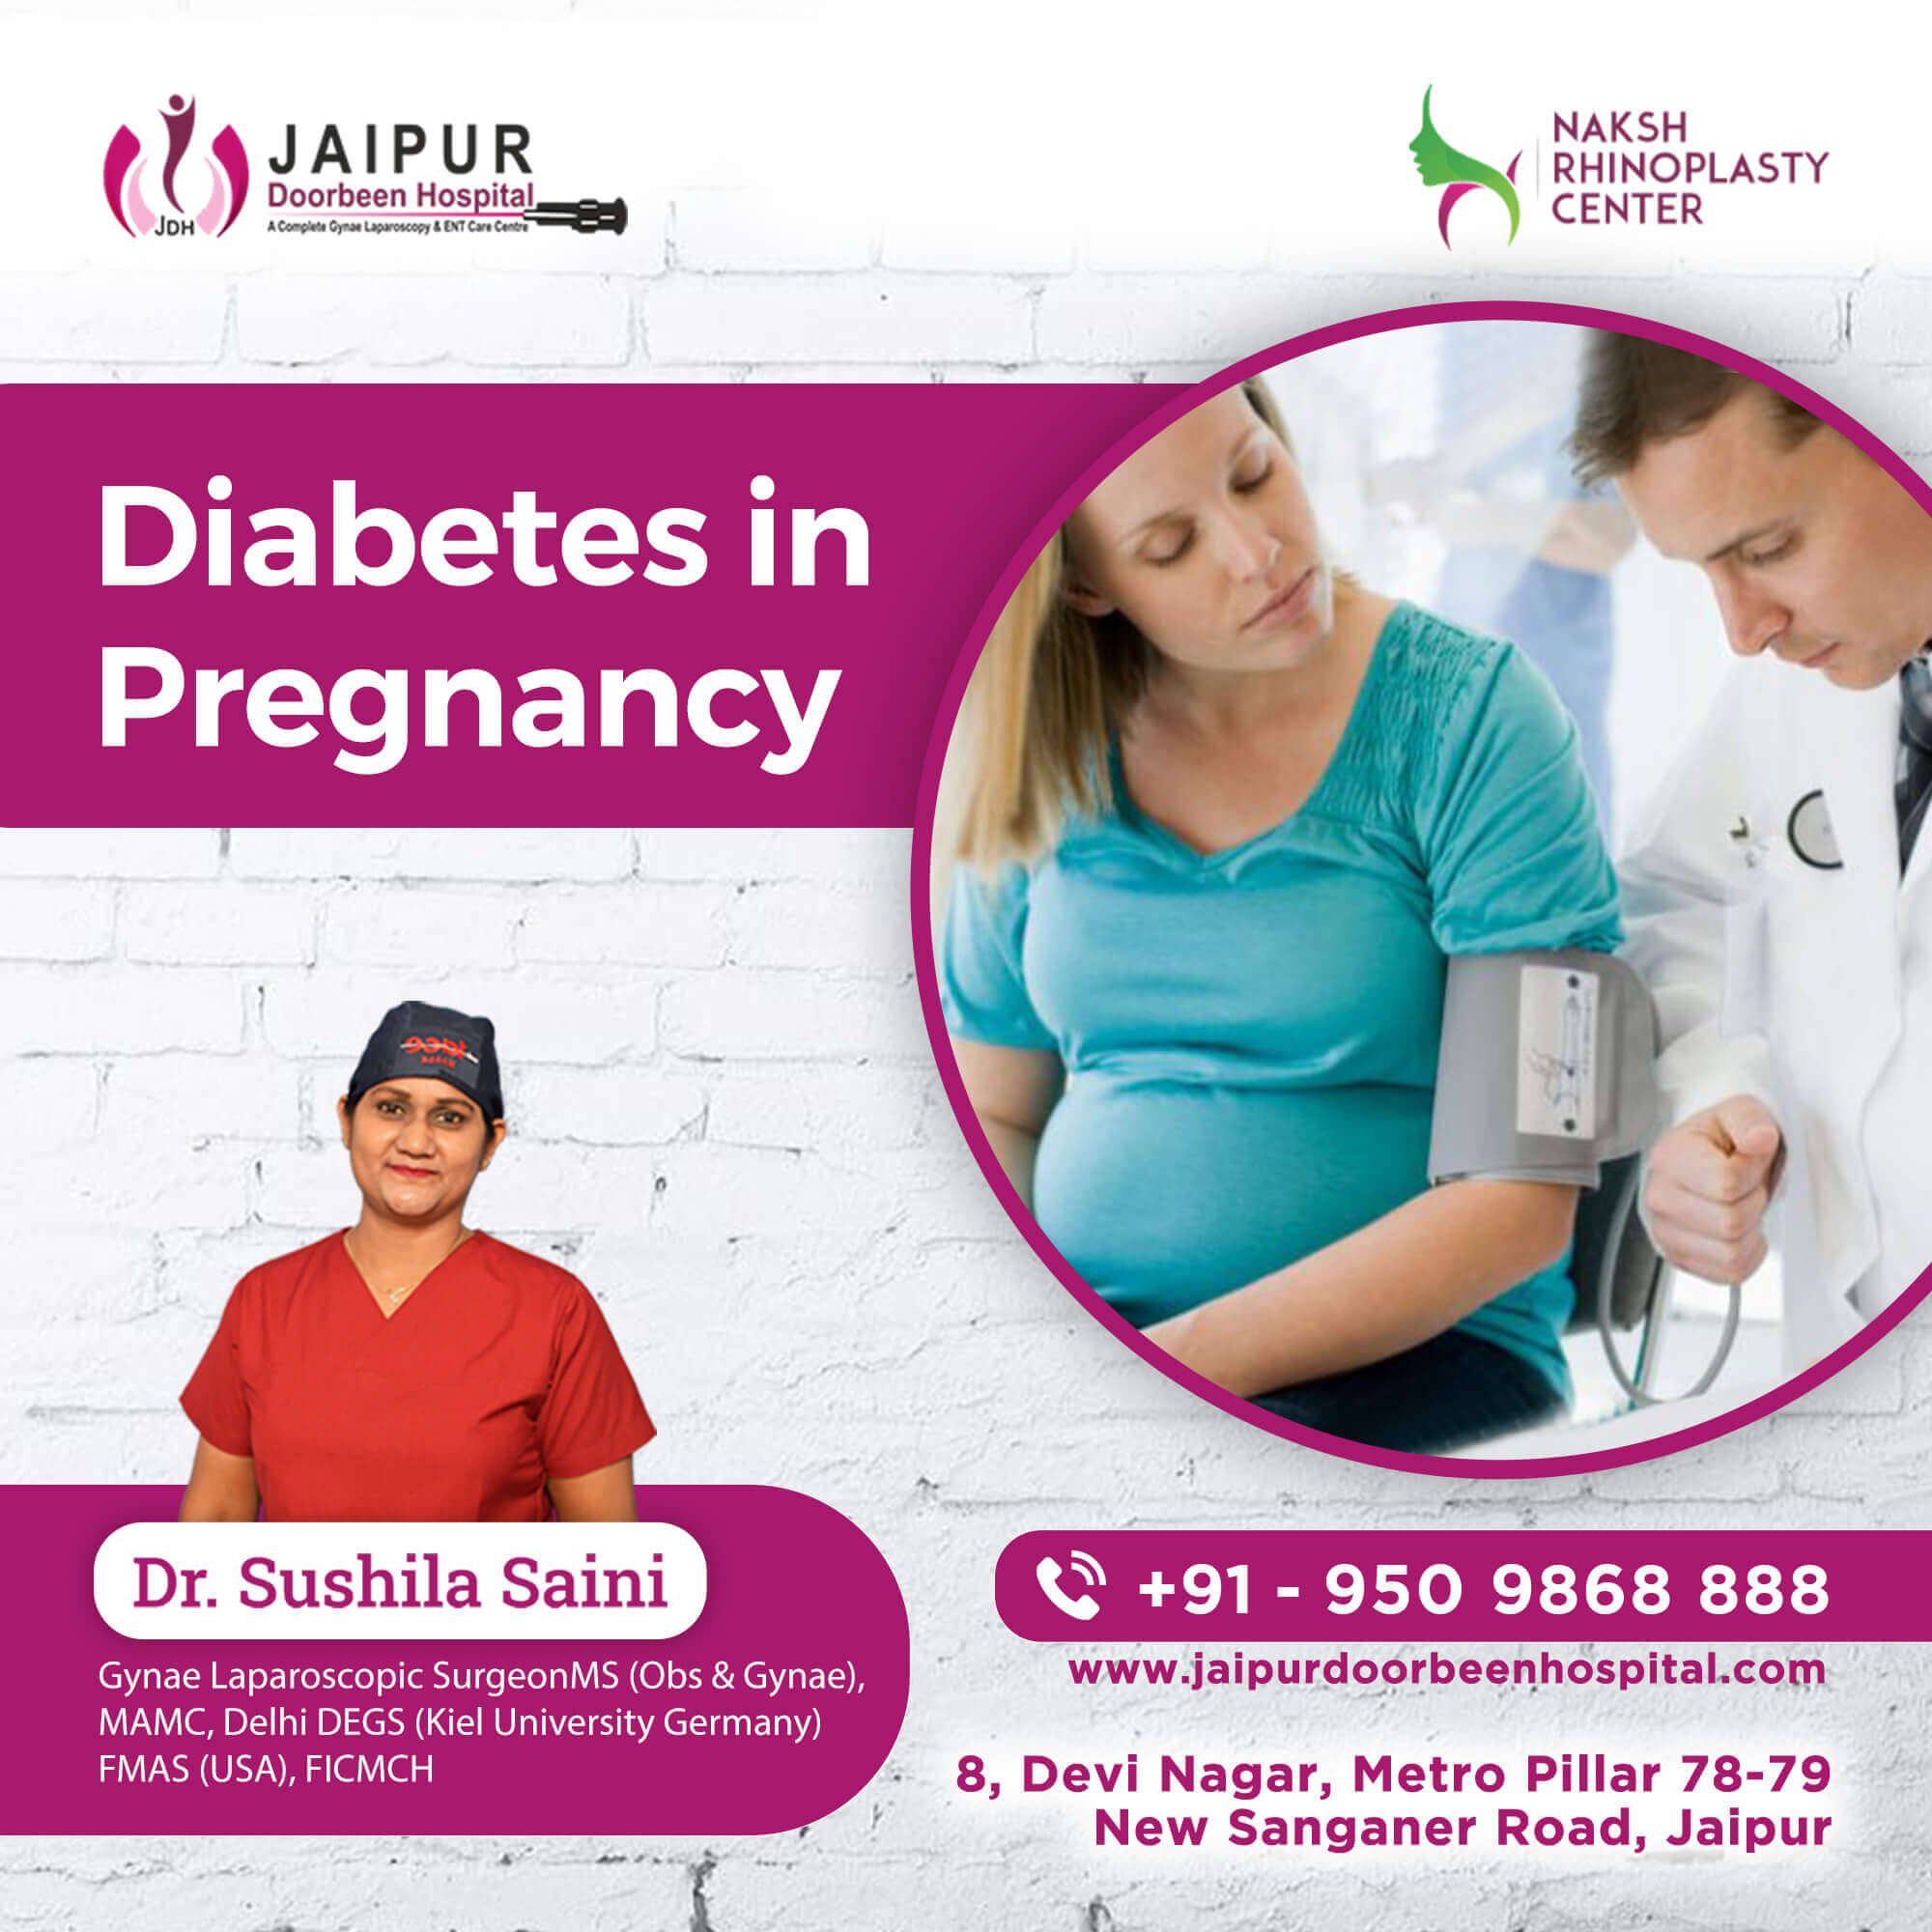 Diabetes in Pregnancy : Risk & Diagnosis